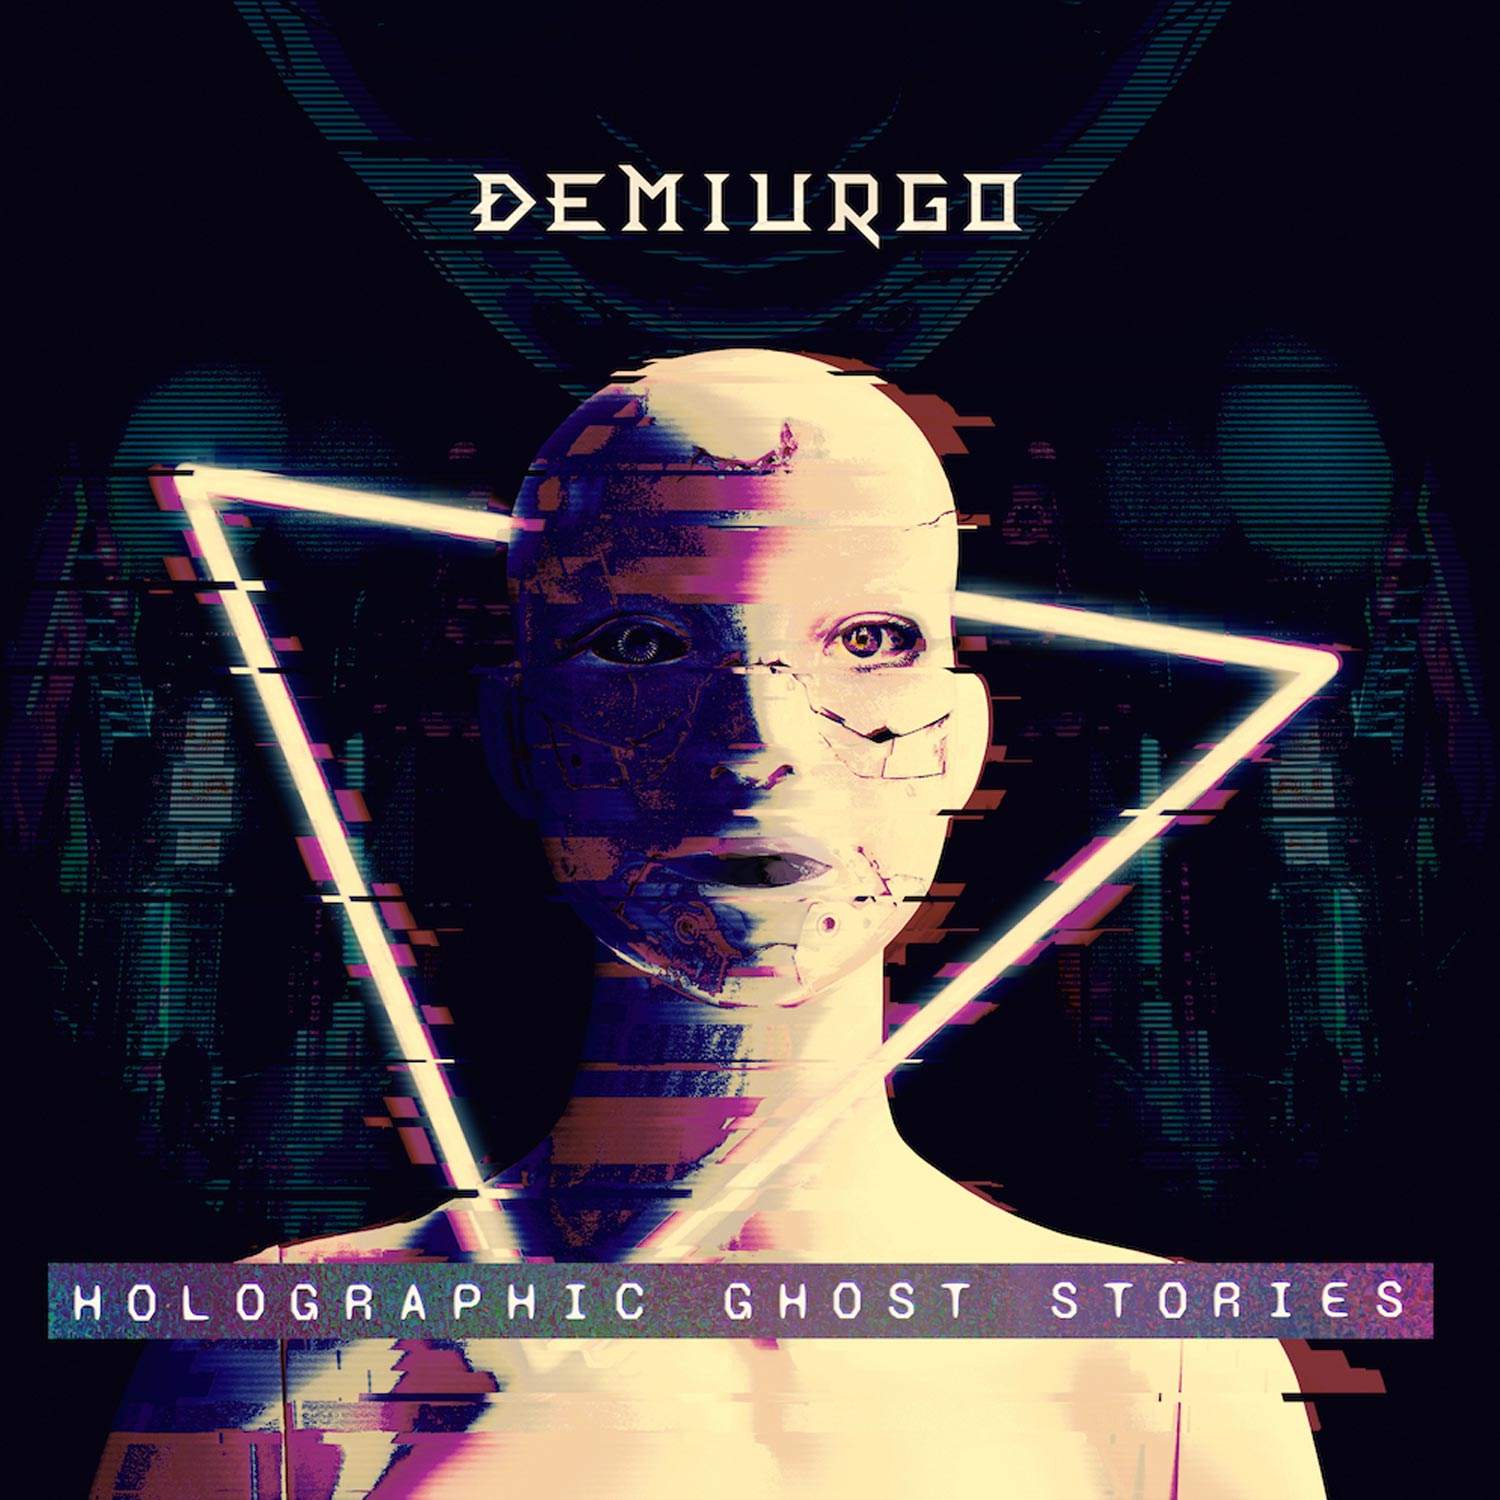 Demiurgo pubblica il nuovo album “Holographic Ghost Stories”